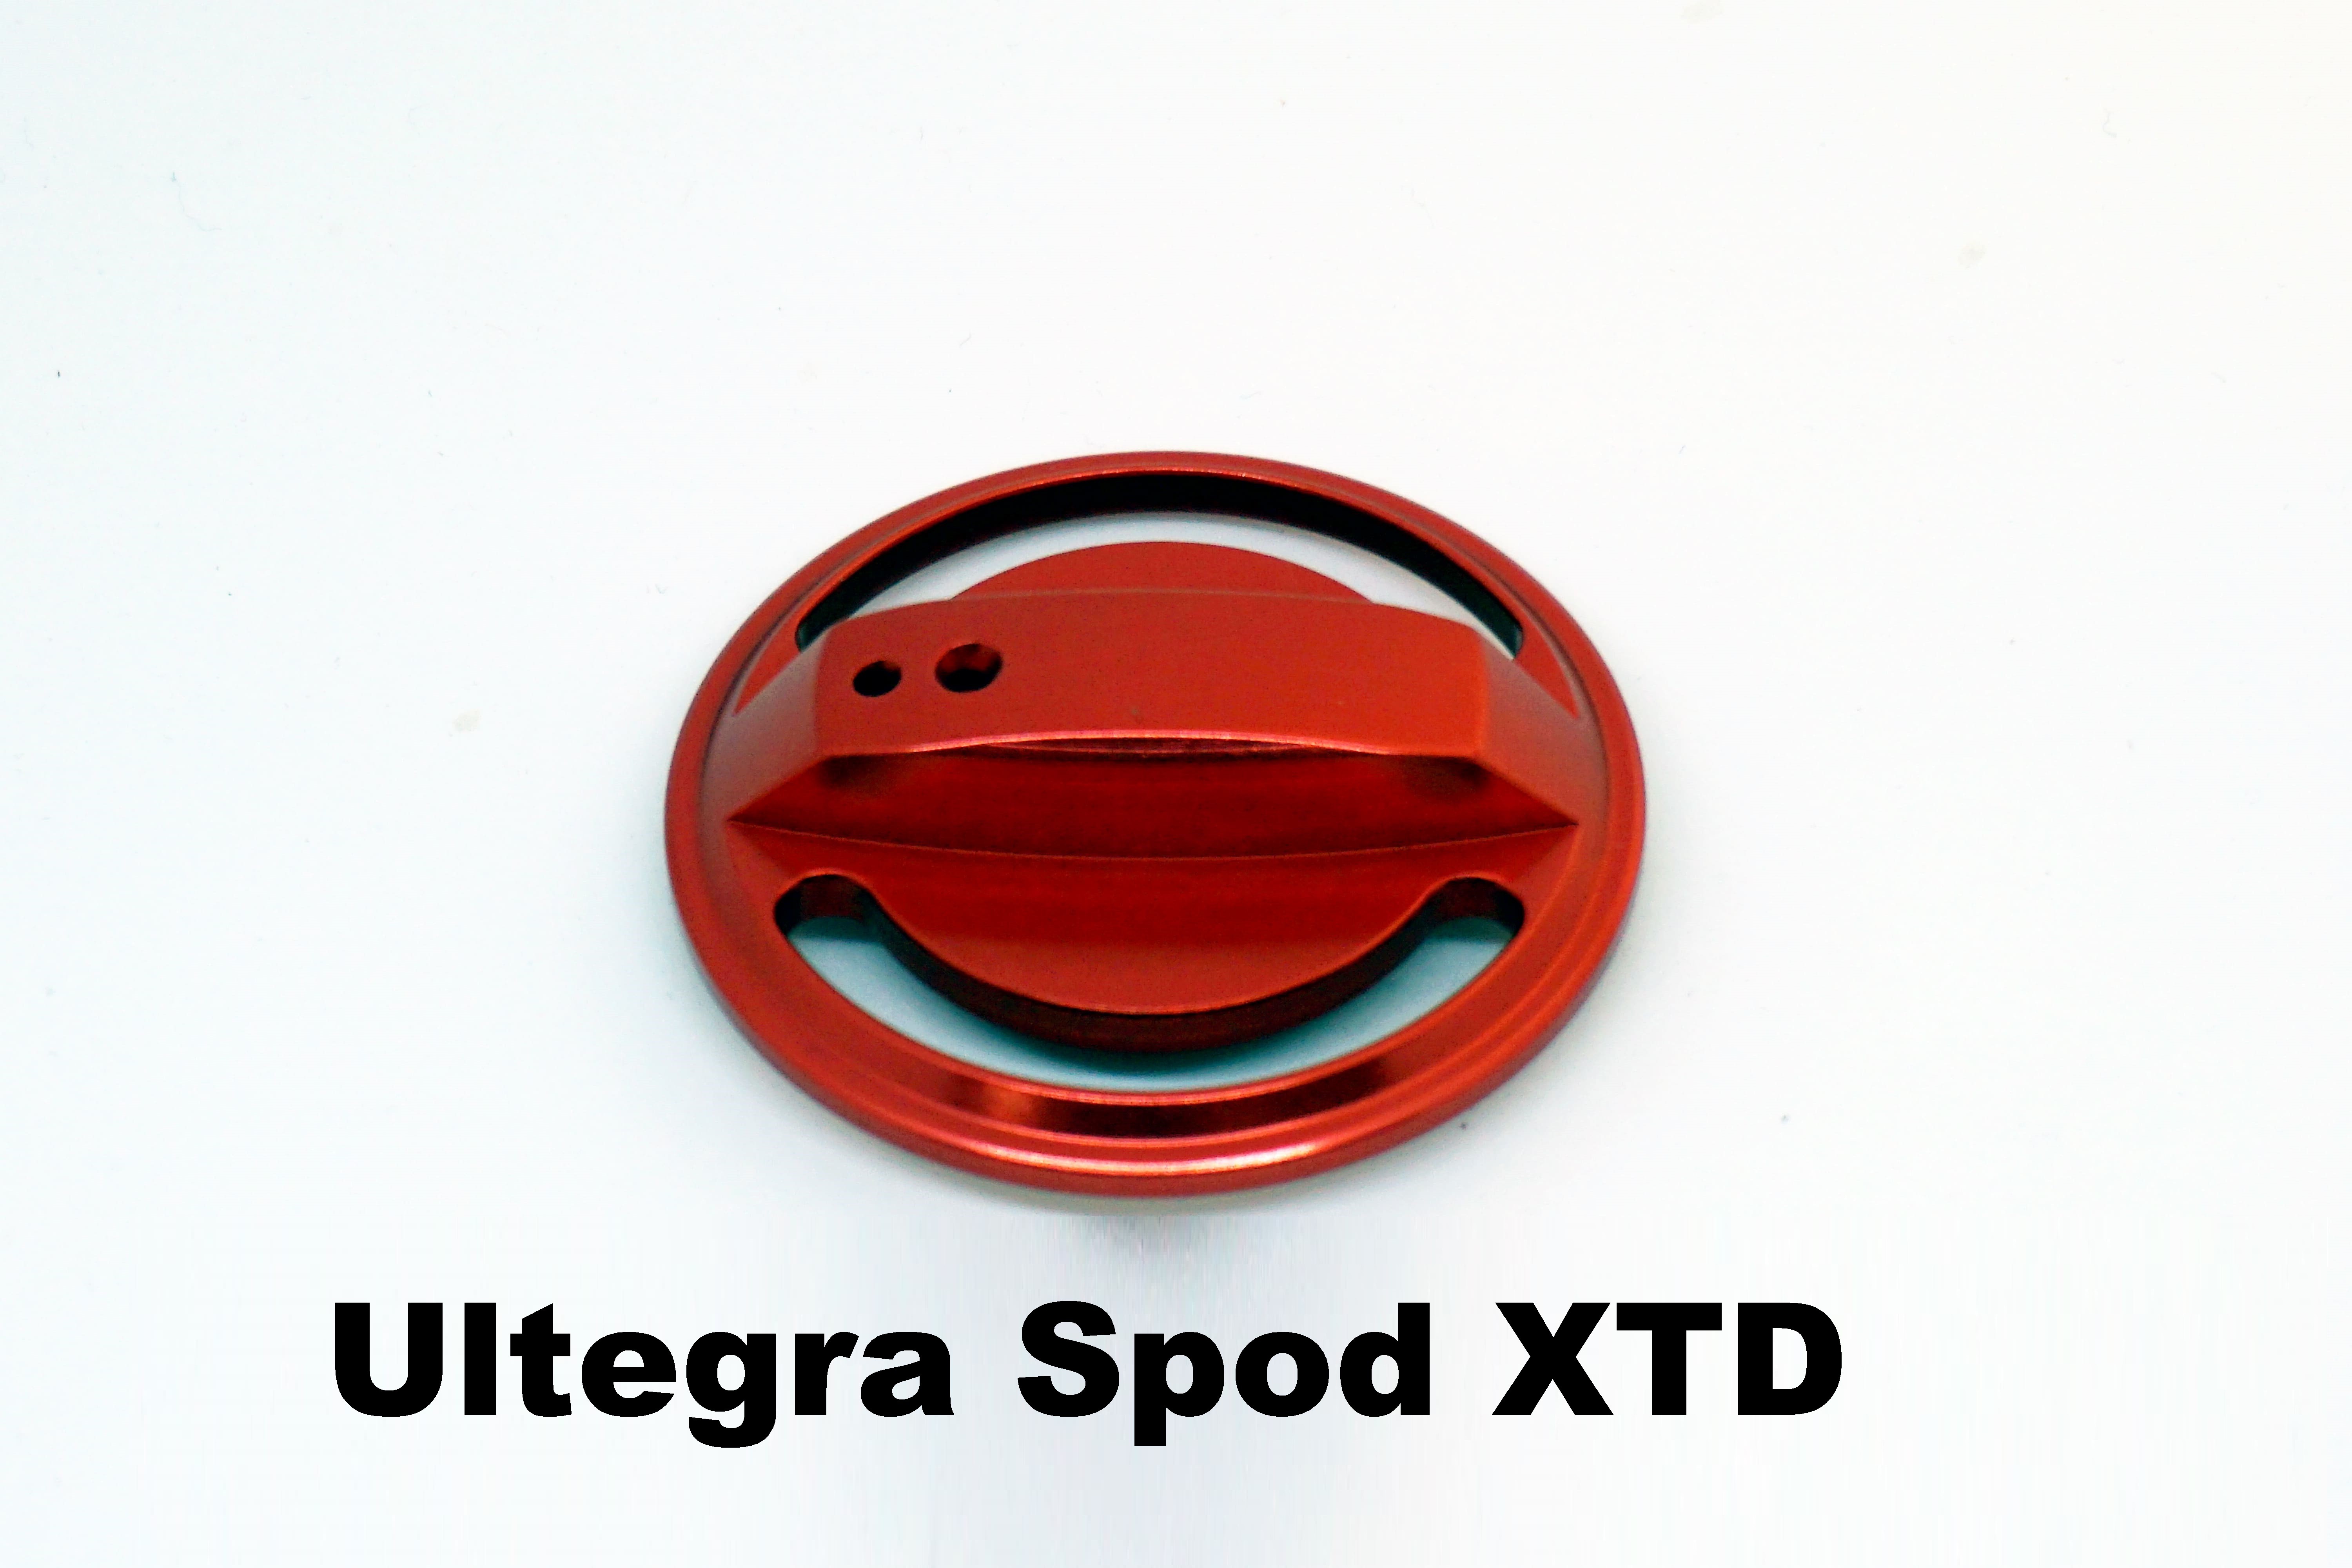 Spina del Freno Ultegra Spod XTD